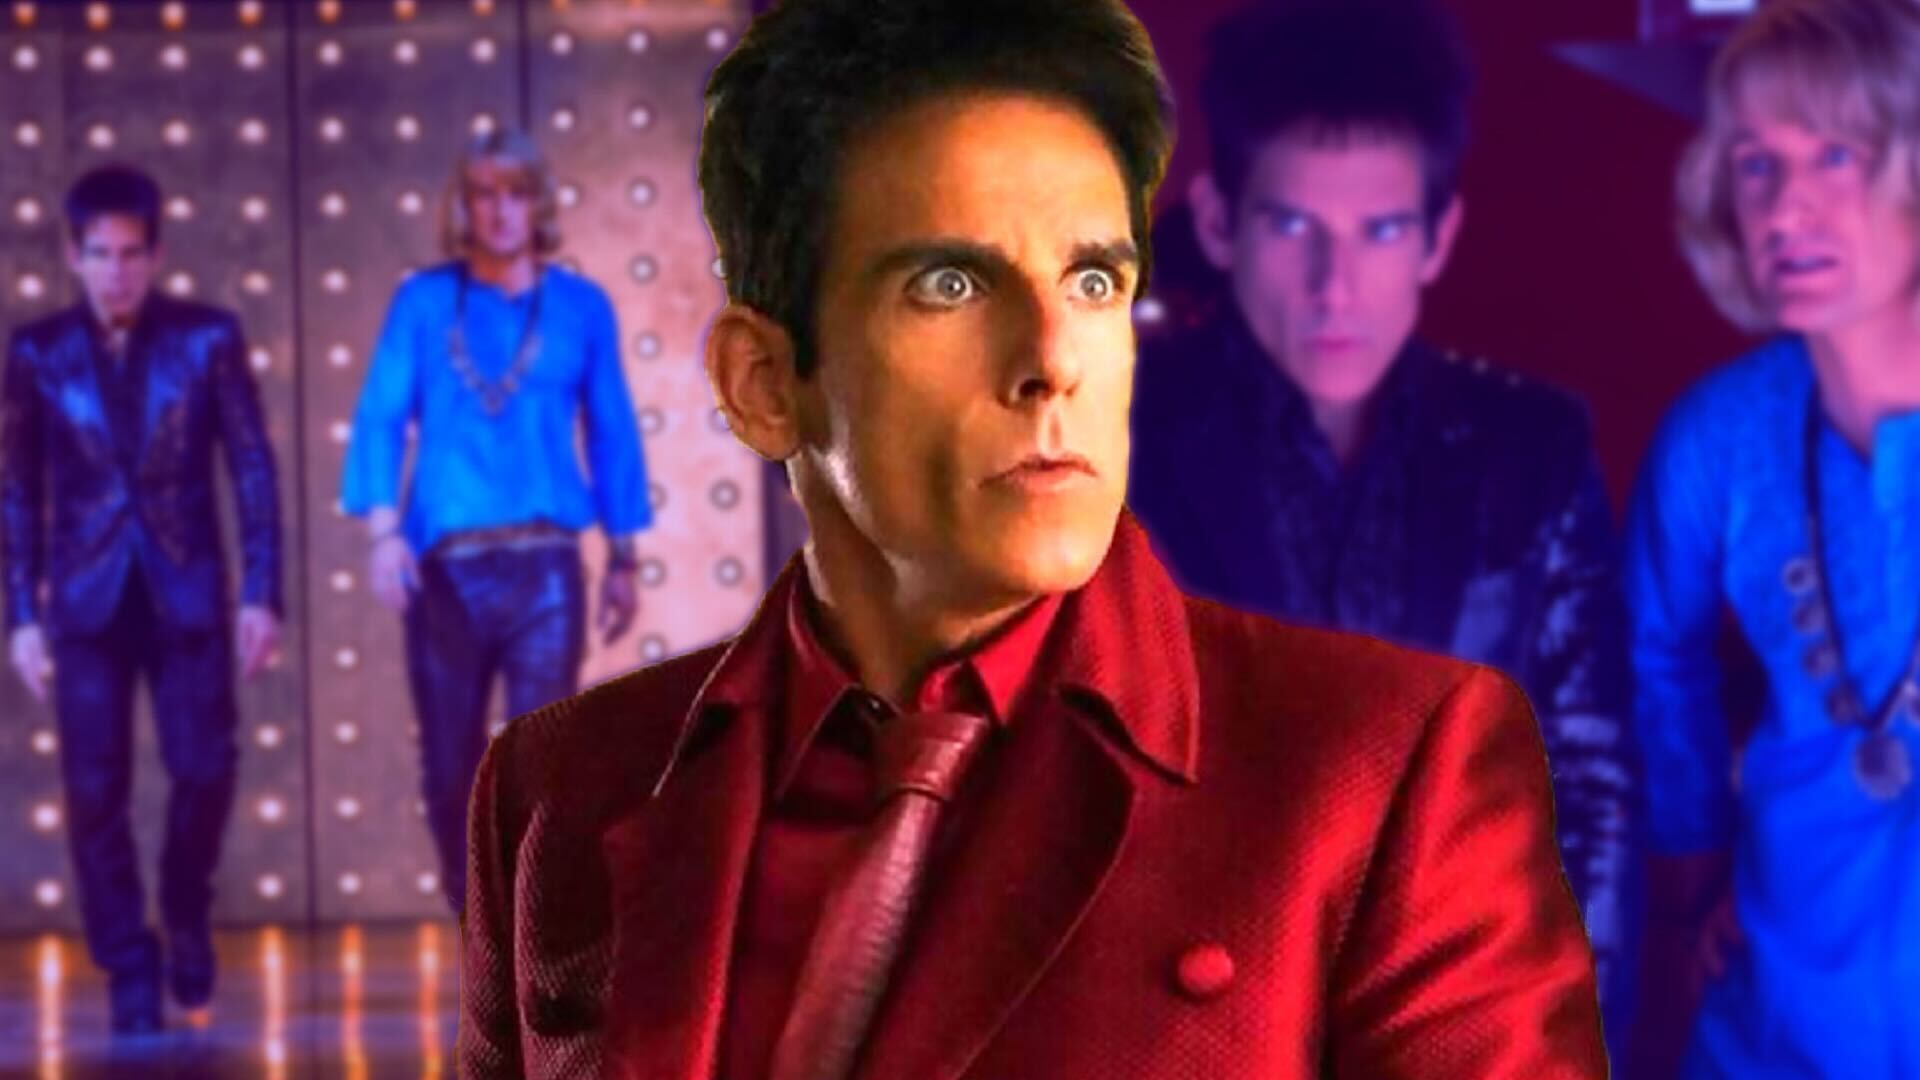 Ben Stiller as Derek Zoolander in red suit